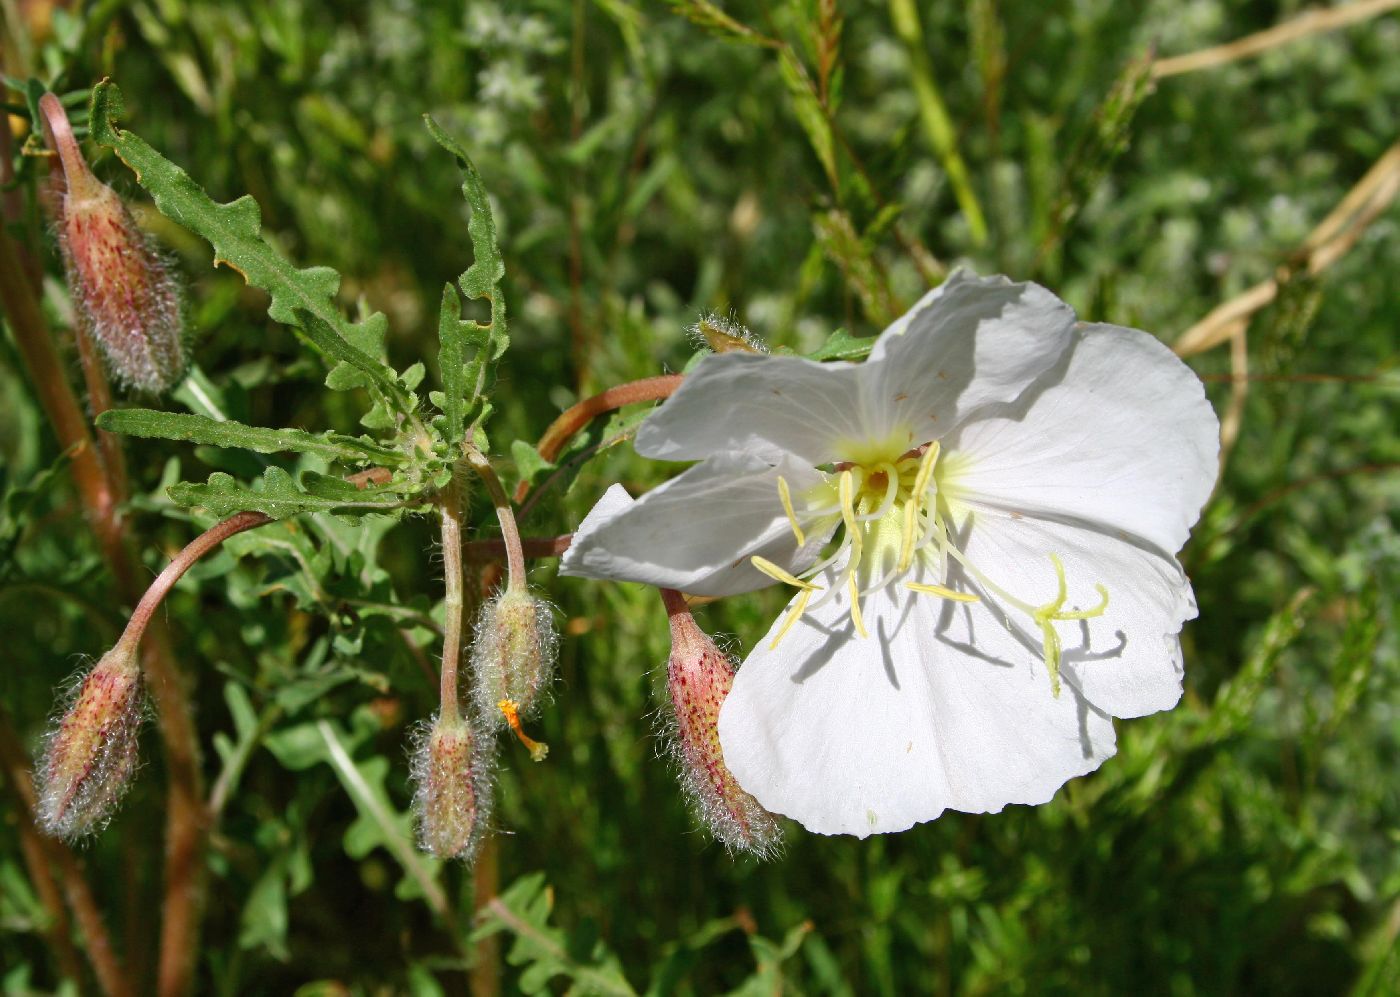 Onagraceae image